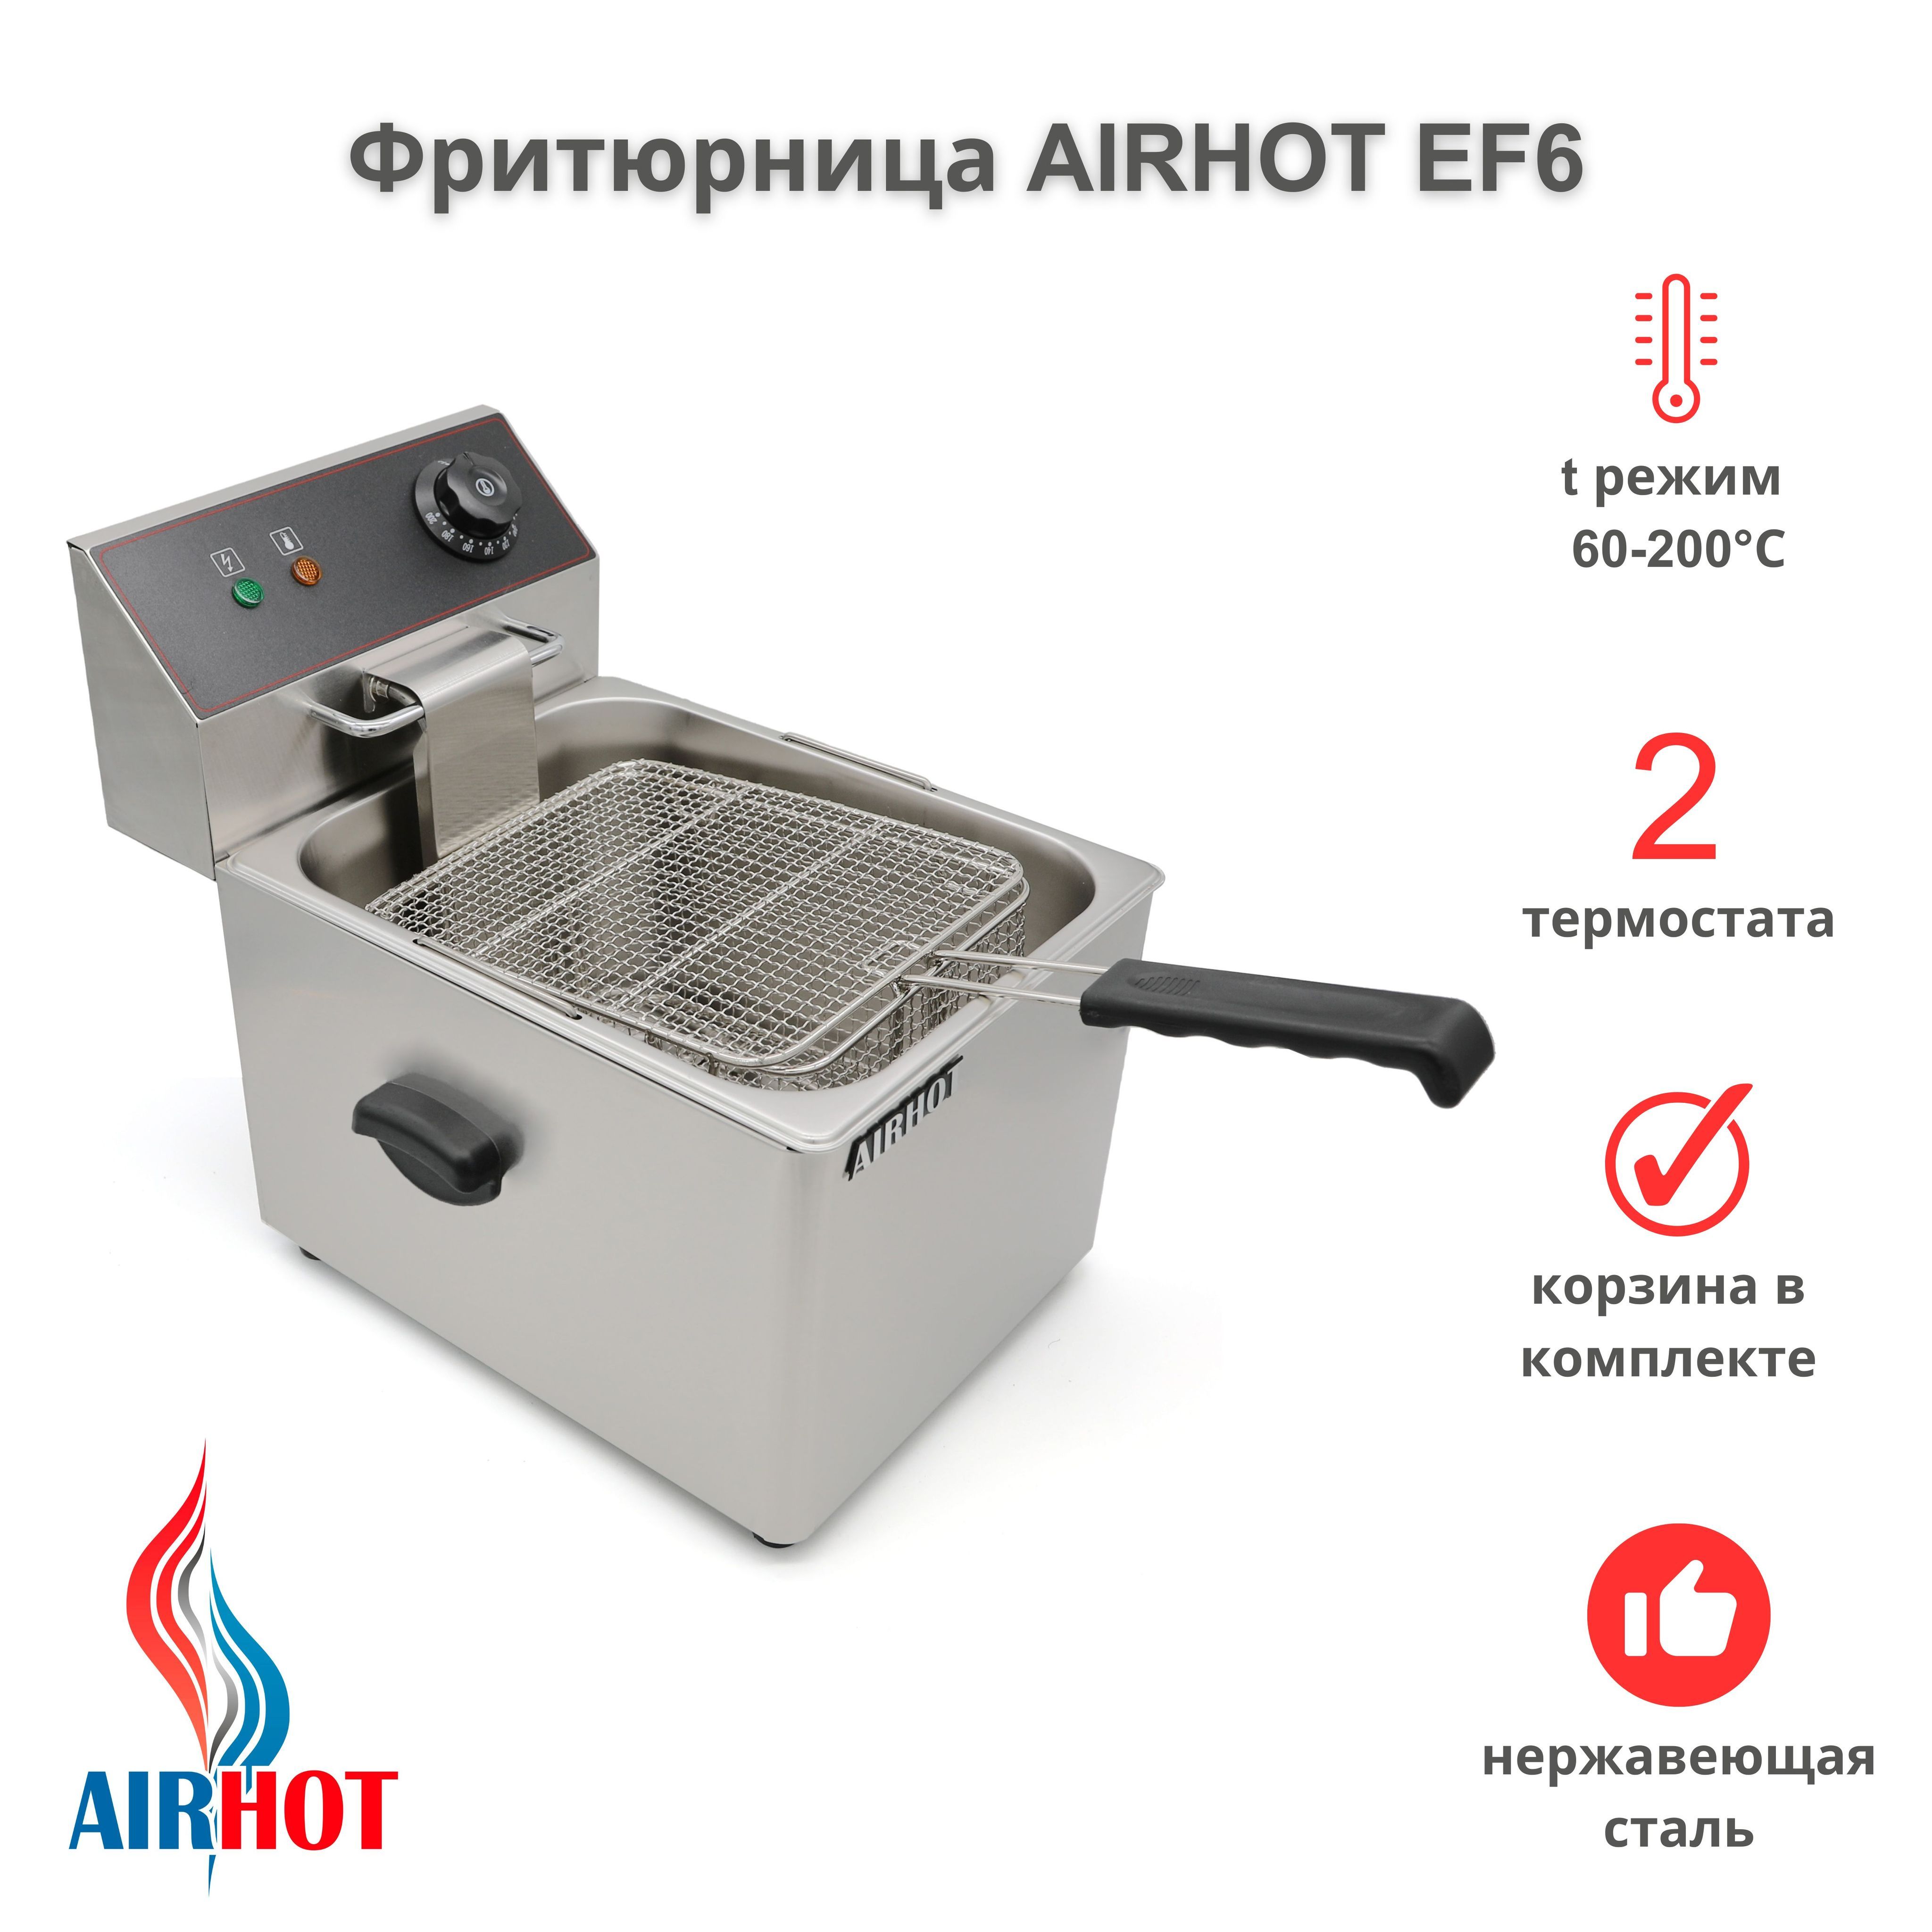 Airhot Ef6